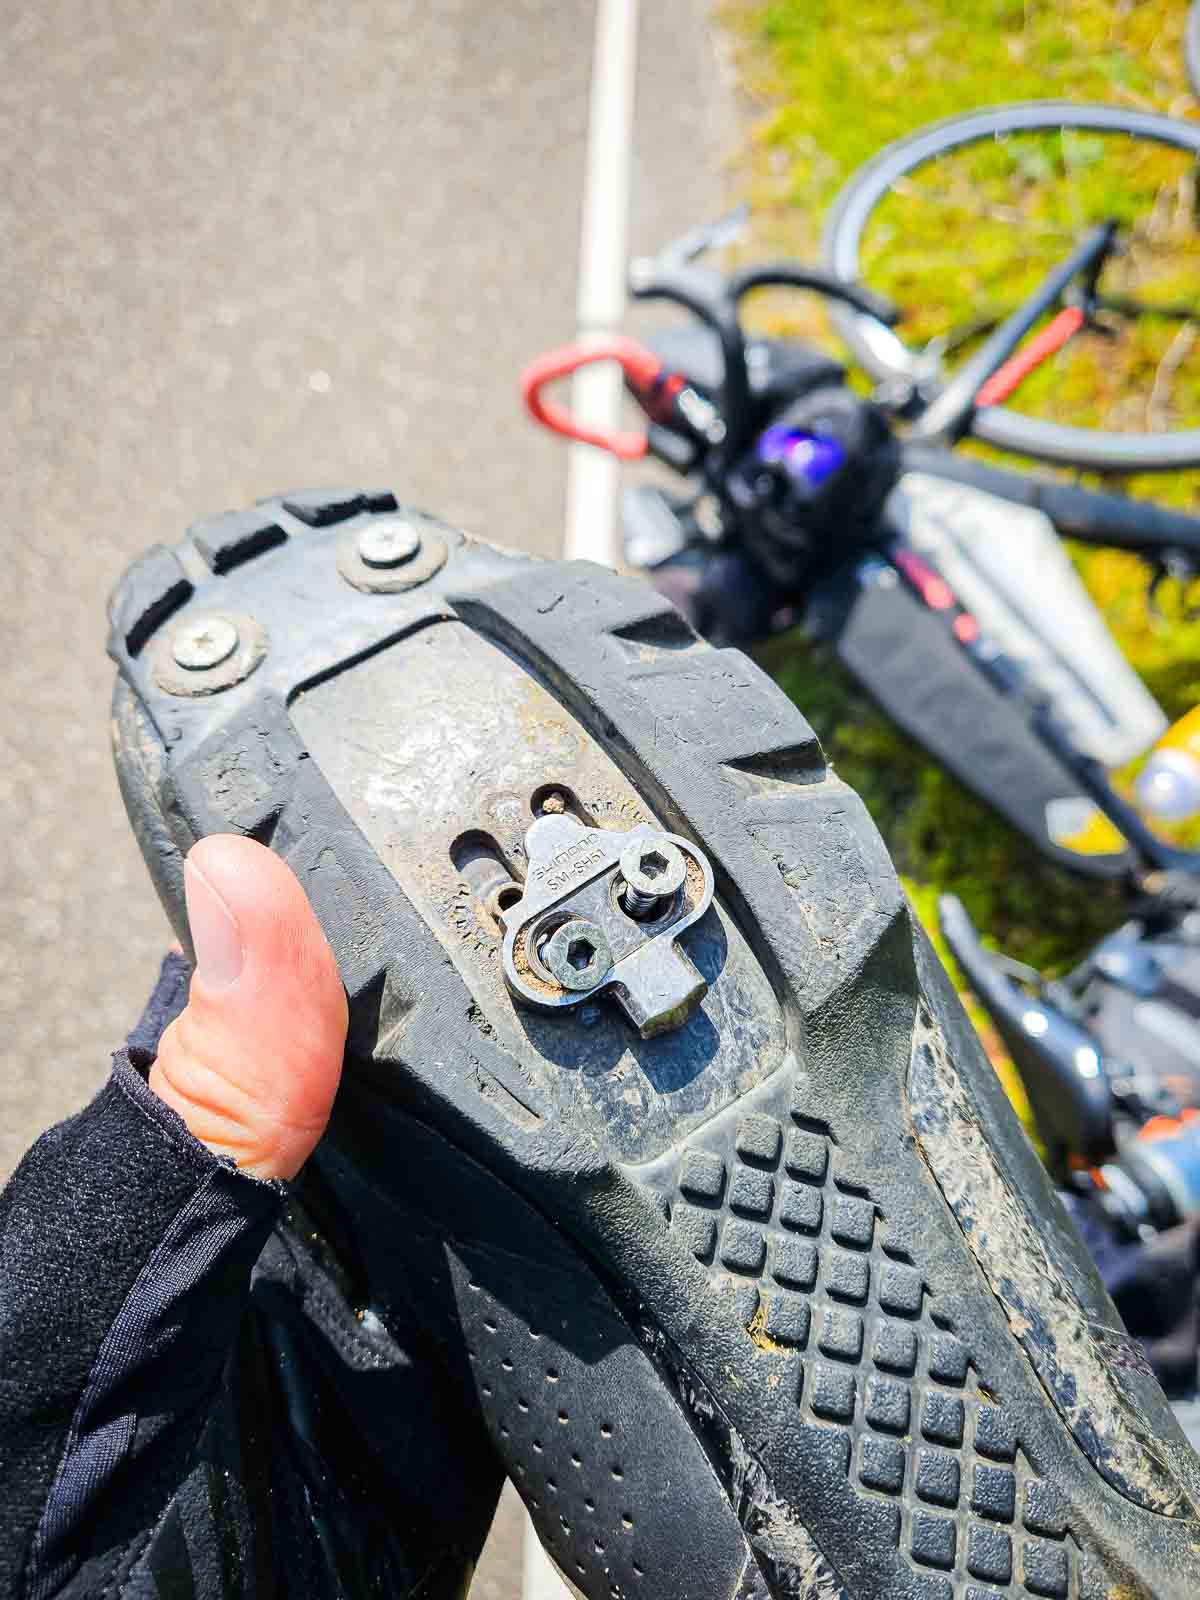 Eine lockere Cleatplatte mit losen Schrauben an einem Radschuh